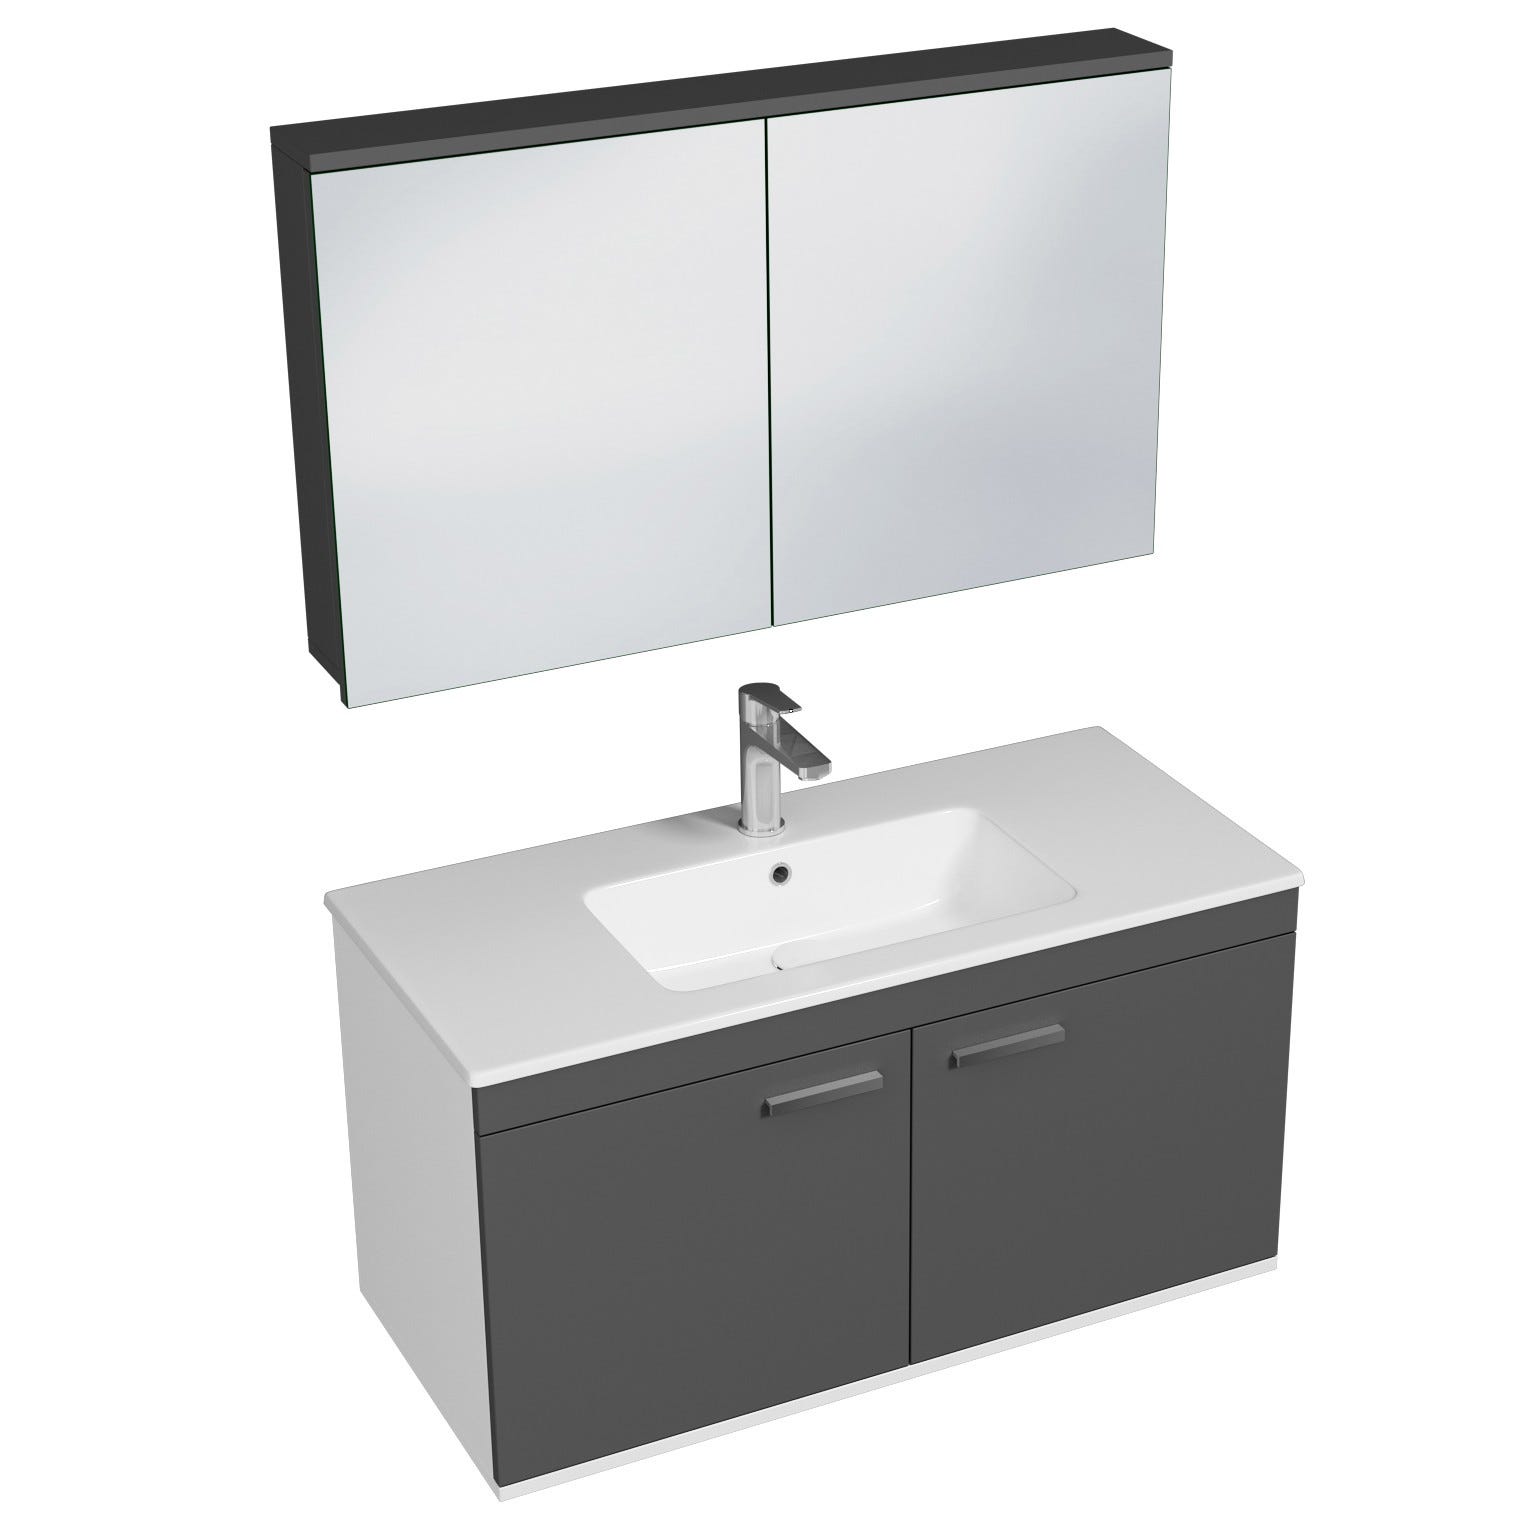 RUBITE Meuble salle de bain simple vasque 2 portes gris anthracite largeur 100 cm + miroir armoire 0